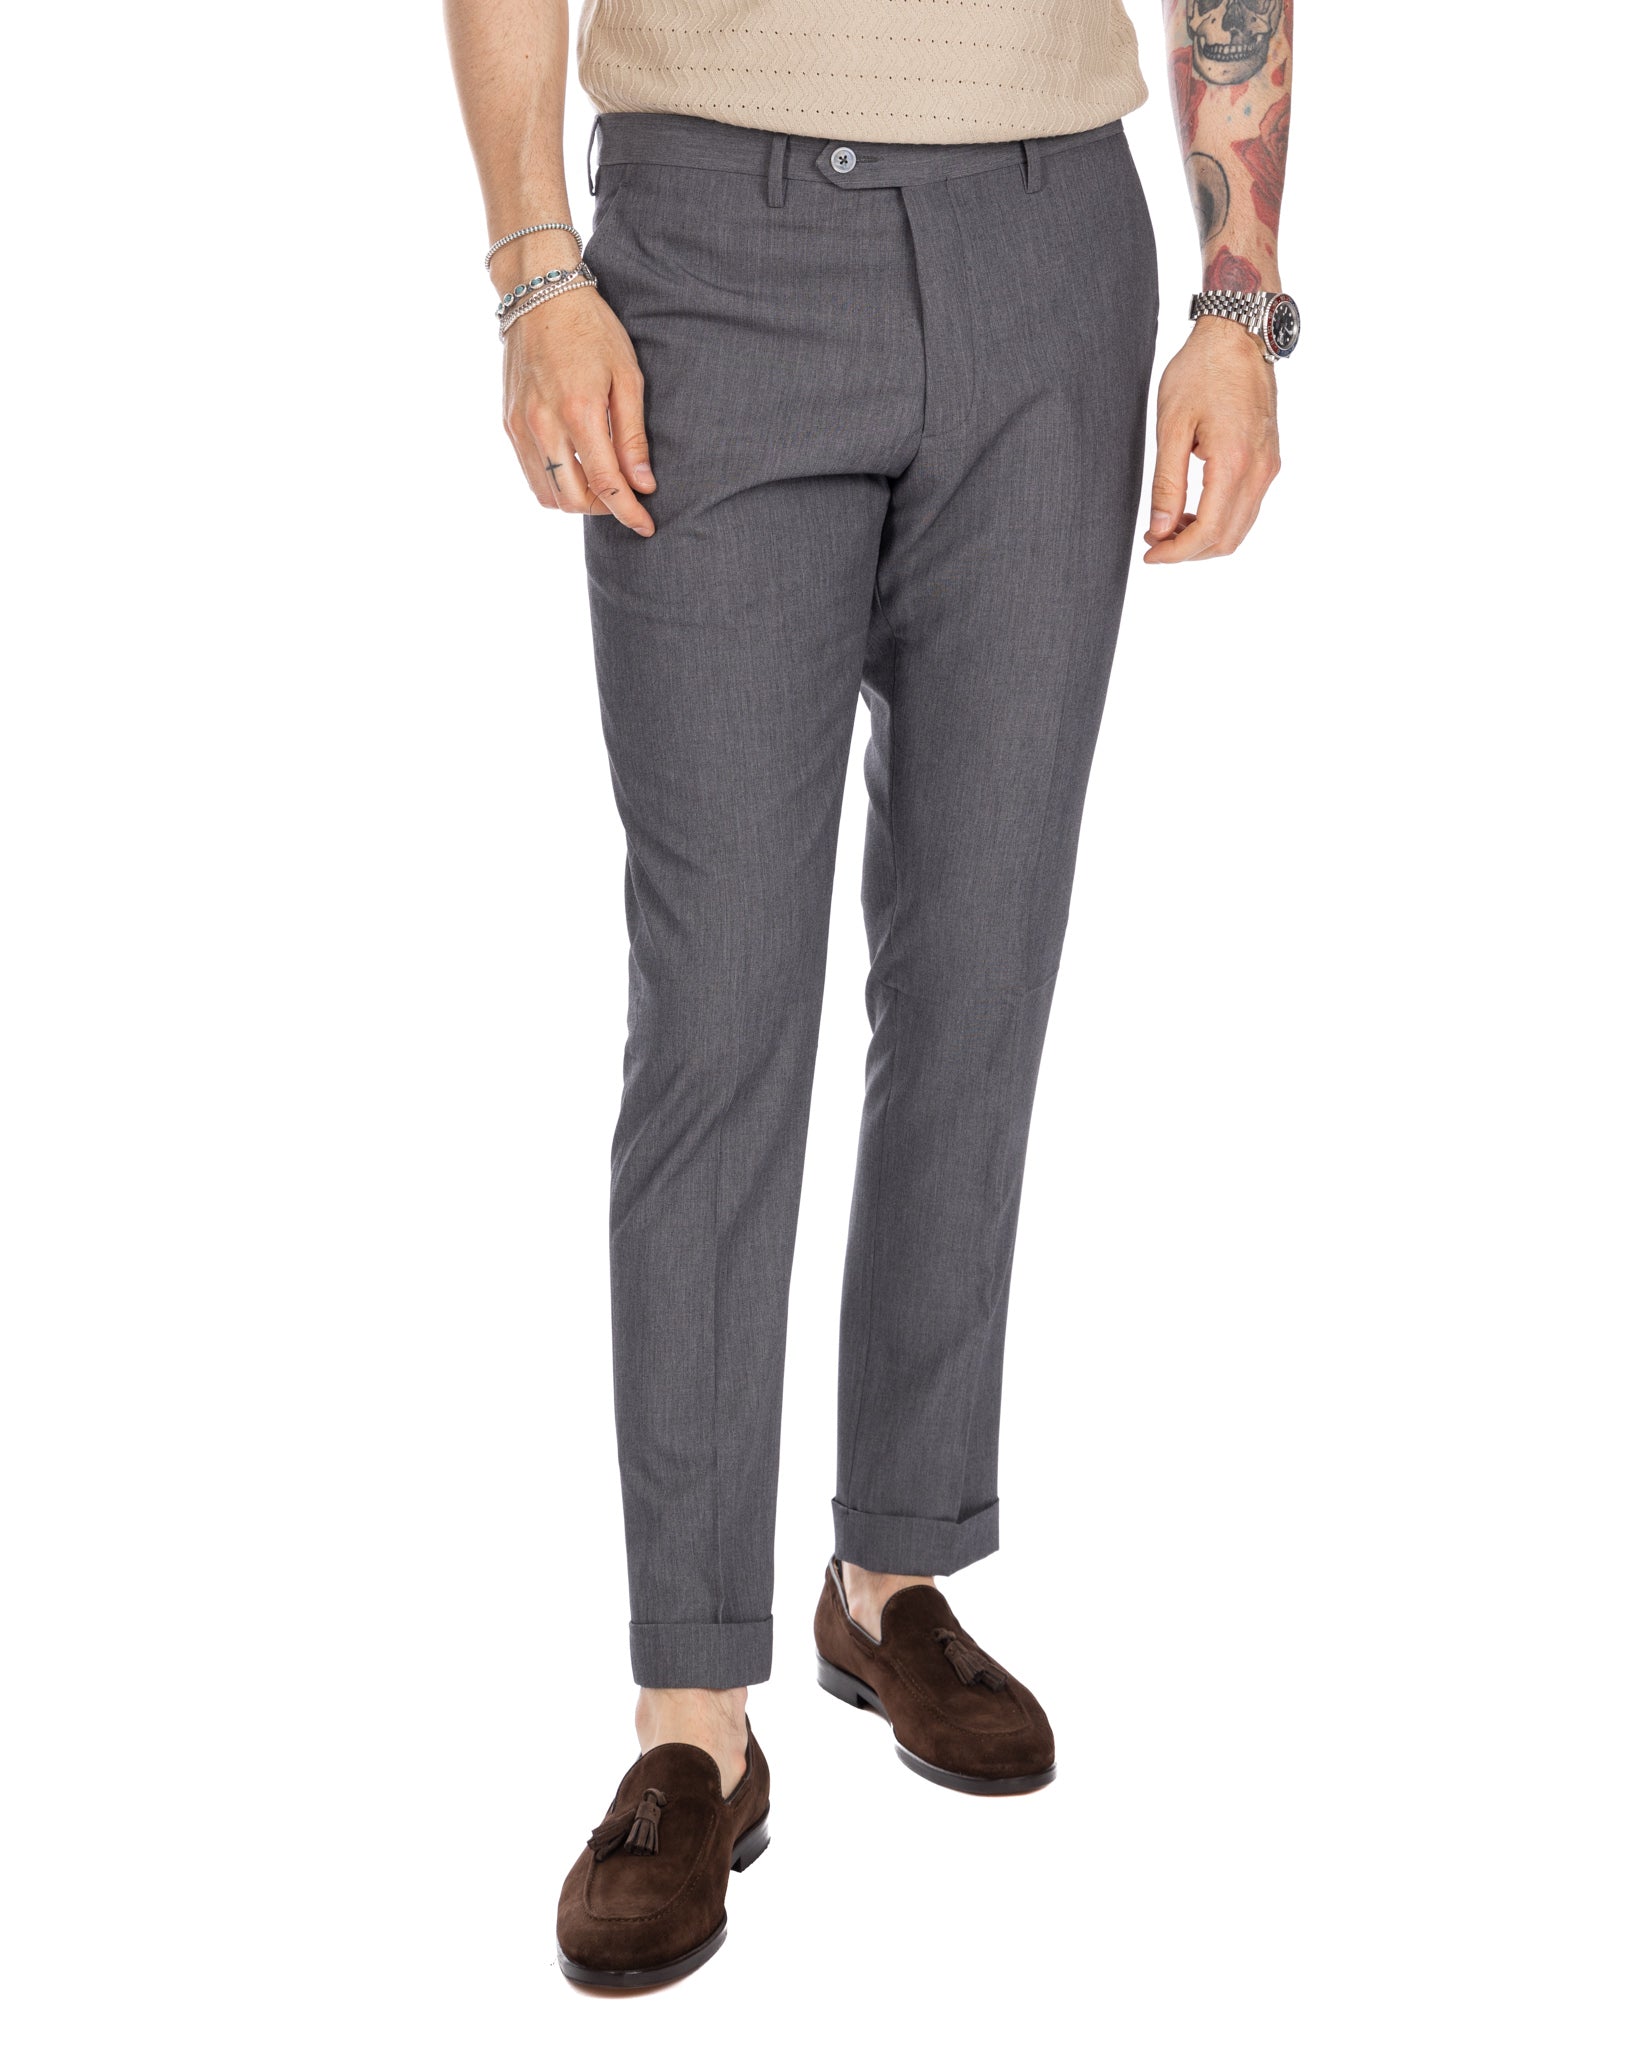 Brema - pantalon basique gris